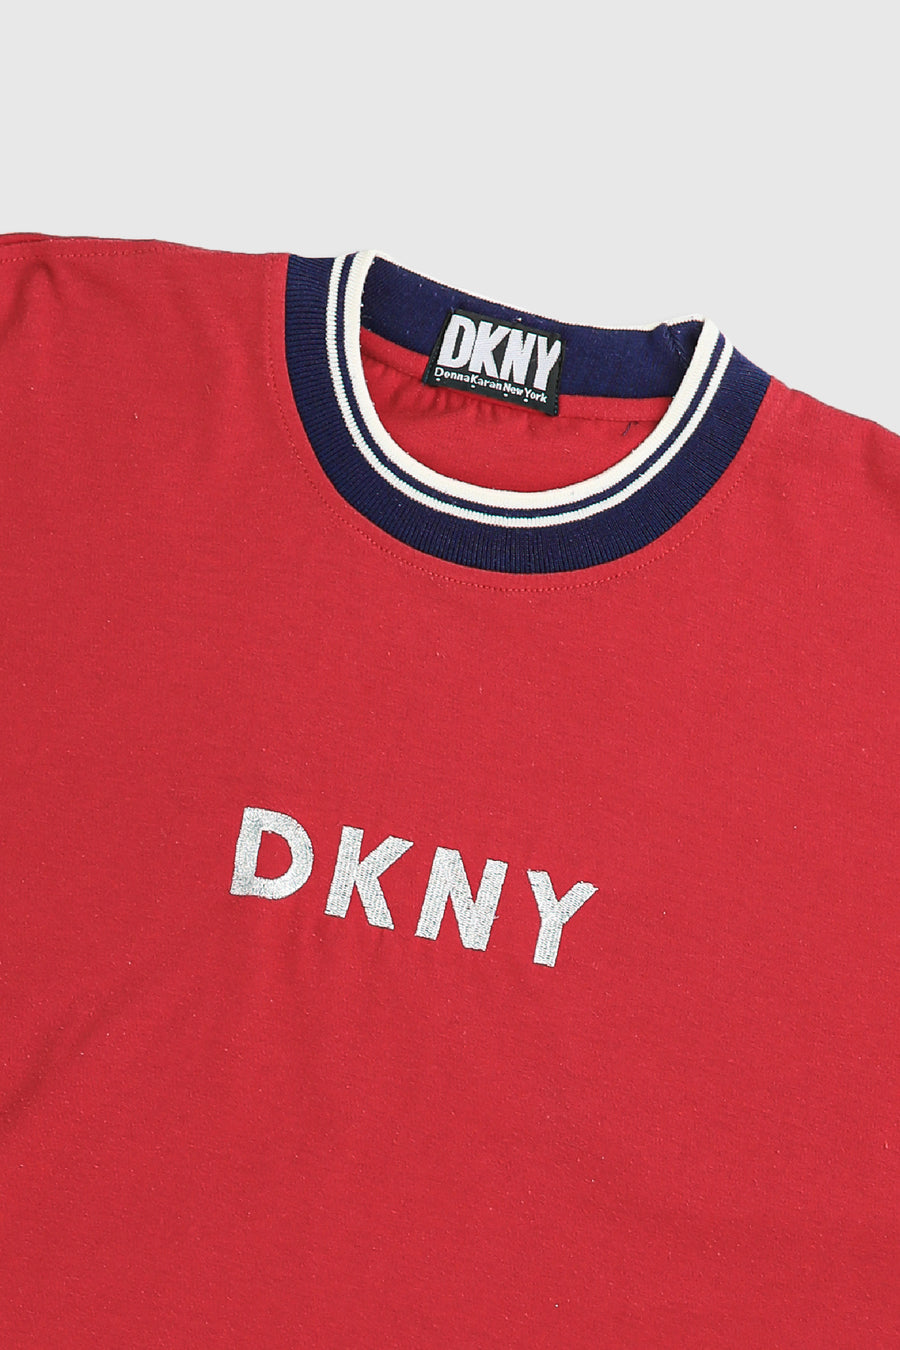 Vintage DKNY Tee - M